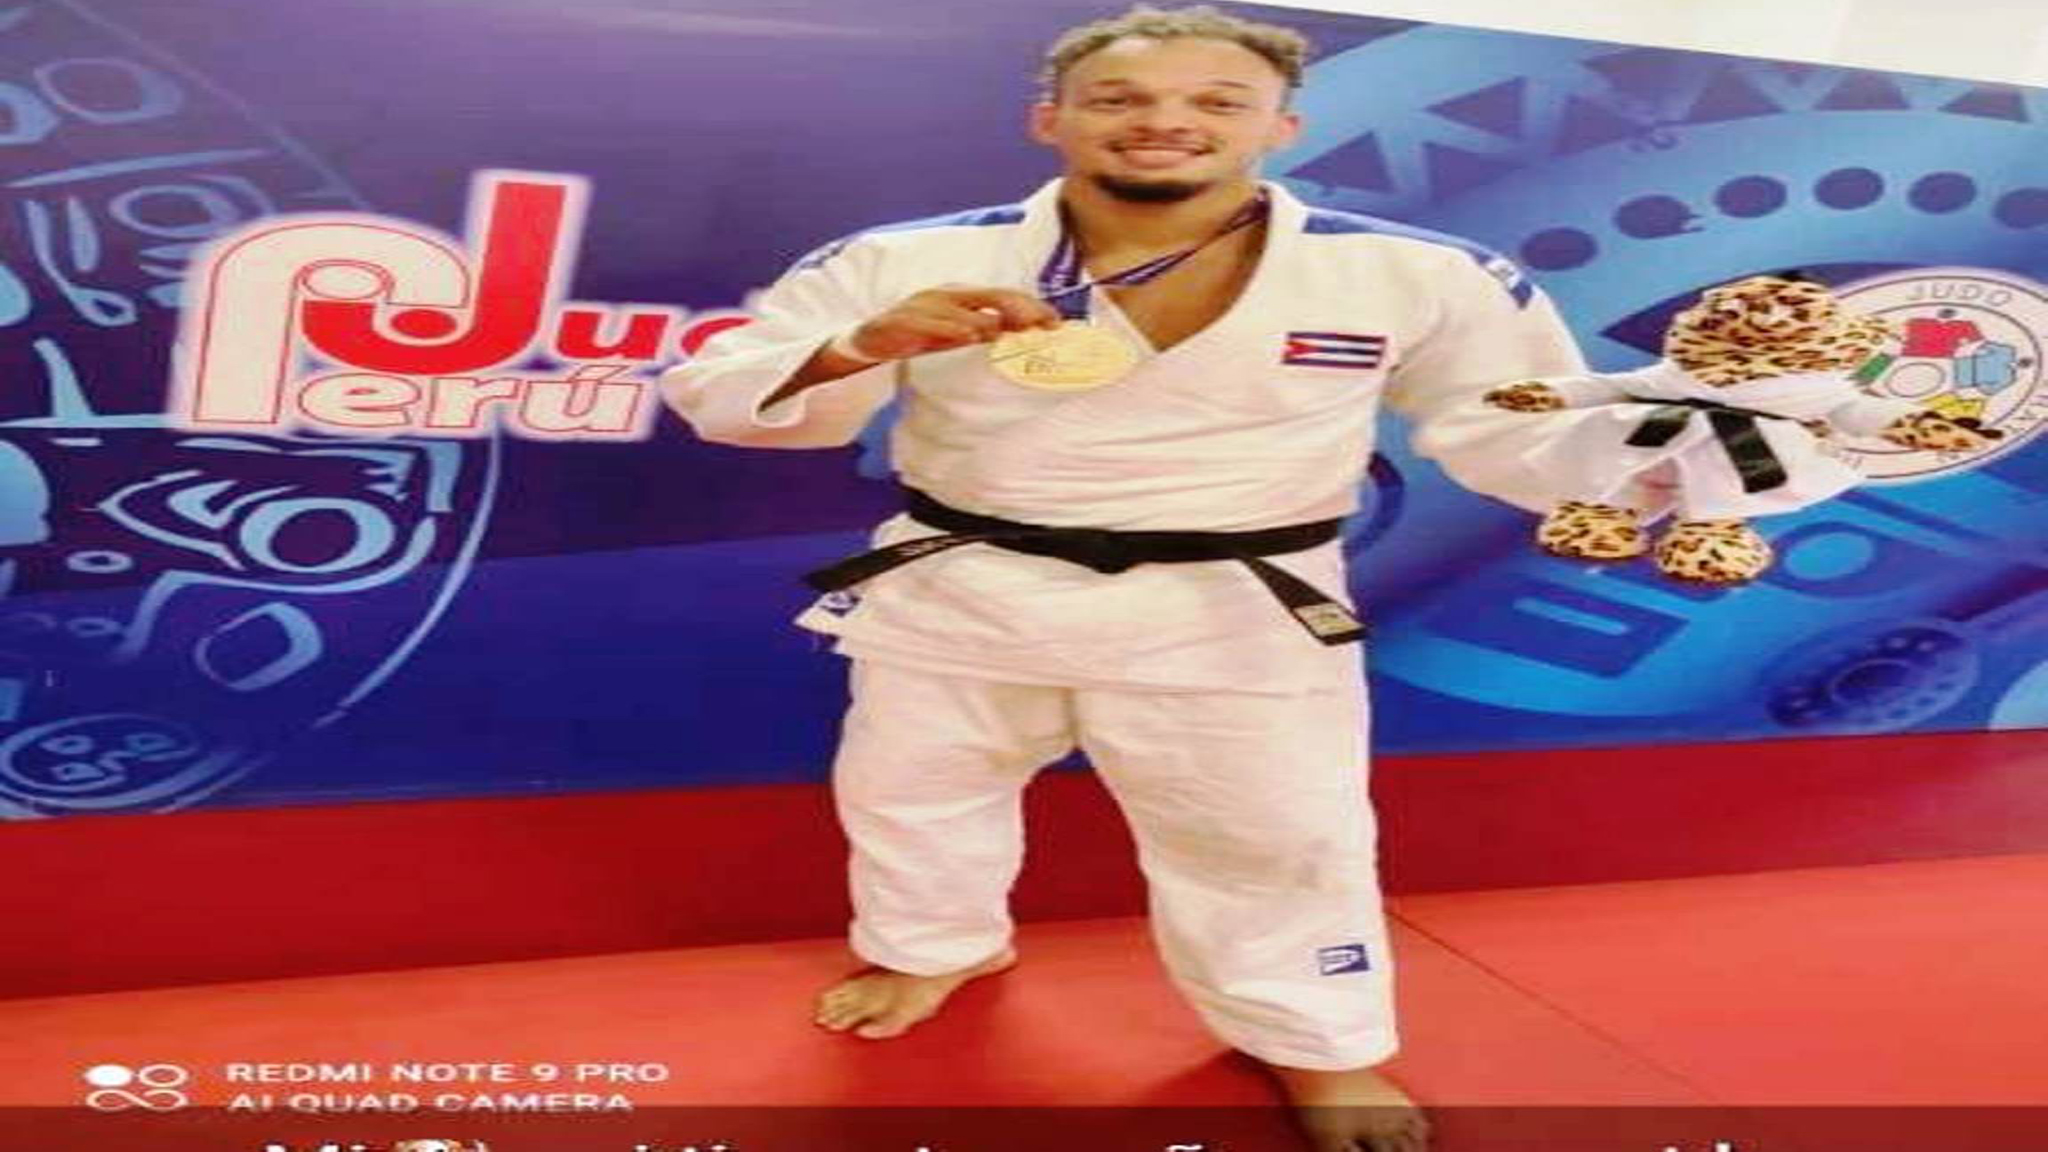 Dedica judoca caimanerense su triunfo a la Gesta del Moncada